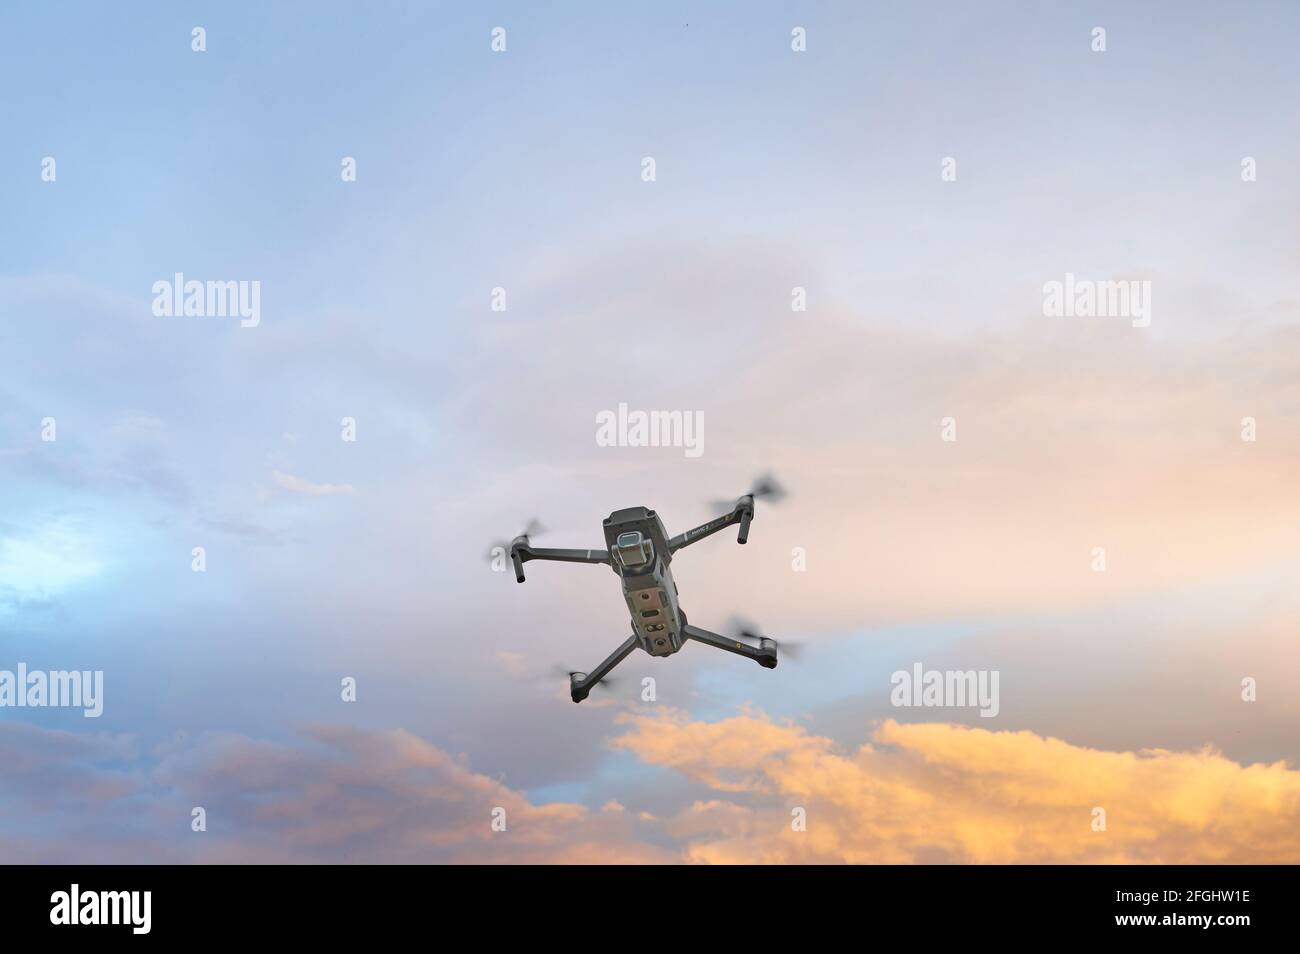 Drone Mavic 2 in volo Foto Stock